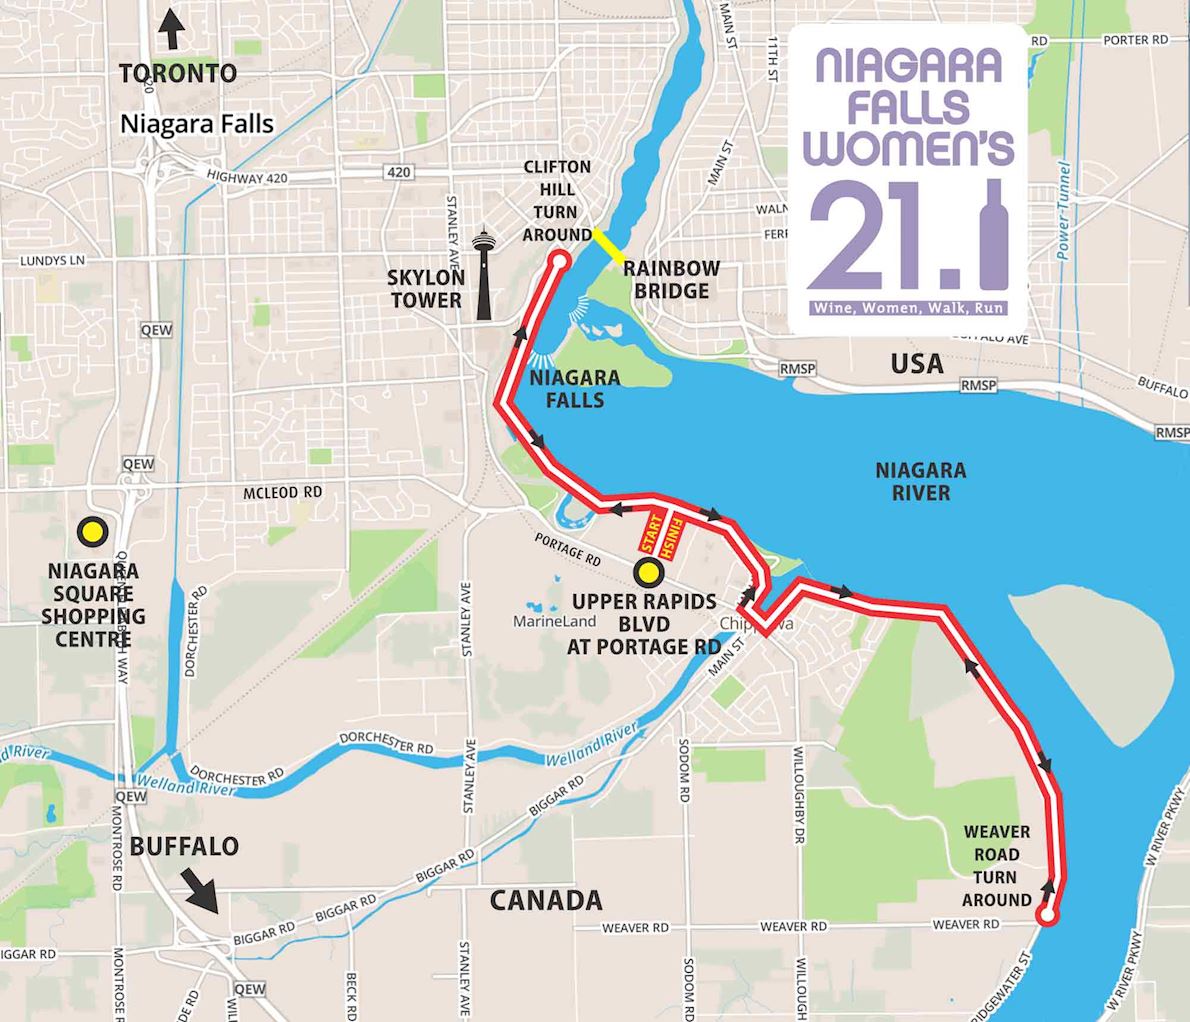 Niagara Falls Women’s Half Marathon & 5K Routenkarte